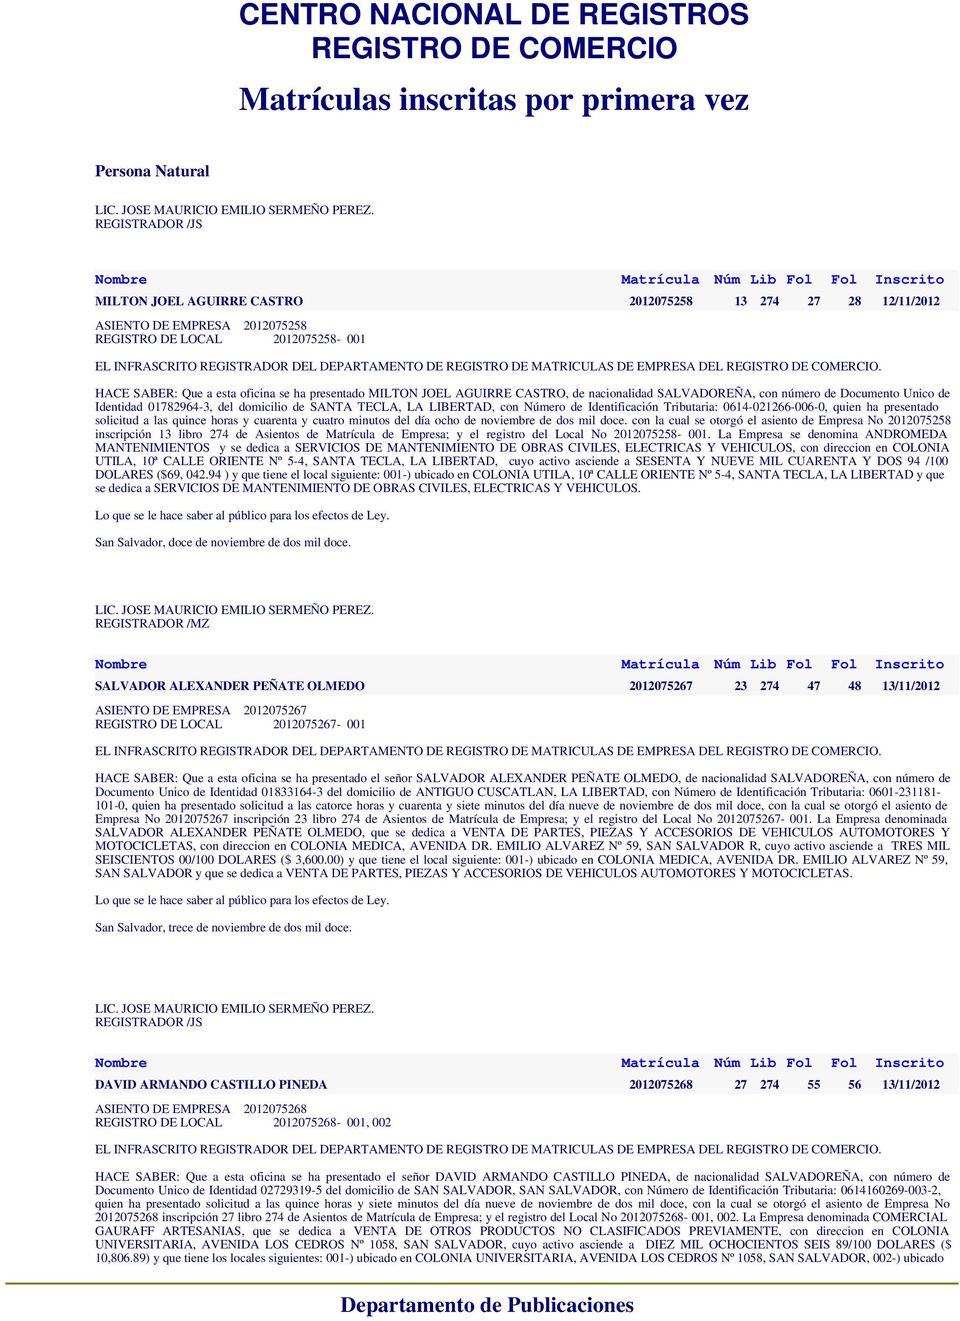 CASTRO, de nacionalidad SALVADOREÑA, con número de Documento Unico de Identidad 01782964-3, del domicilio de SANTA TECLA, LA LIBERTAD, con Número de Identificación Tributaria: 0614-021266-006-0,